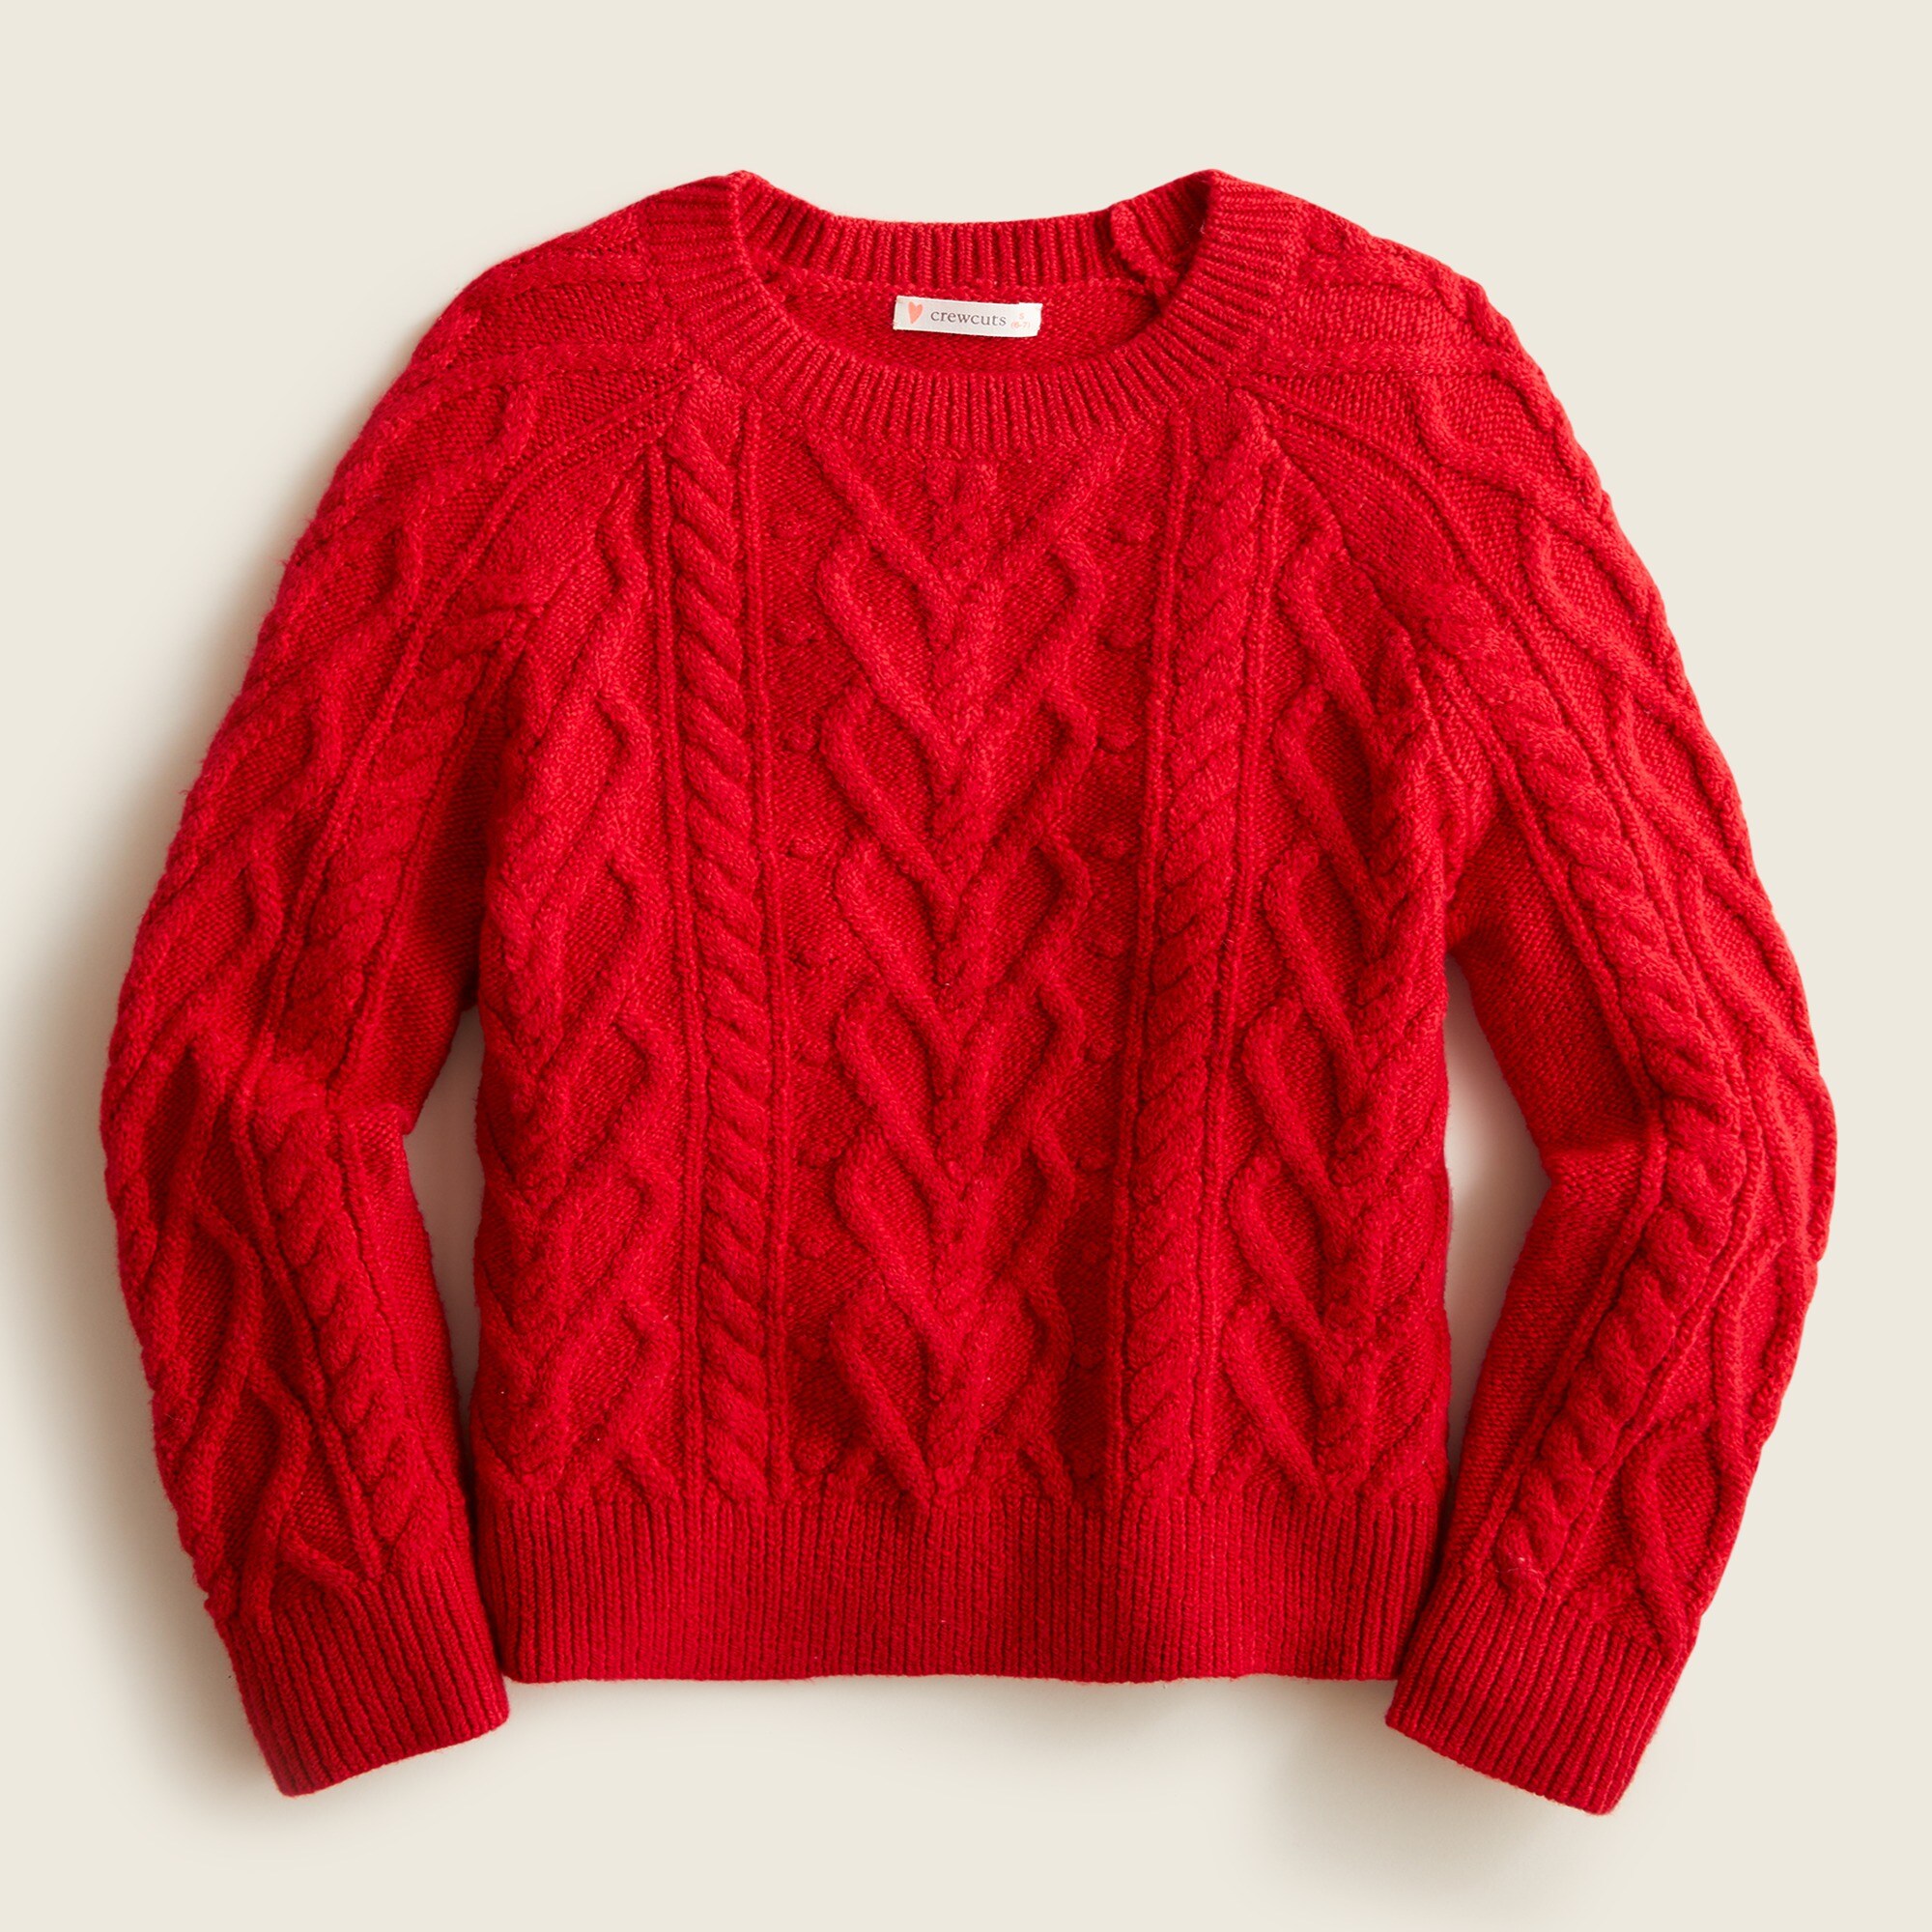 제이크루 걸즈 스웨터 J.Crew Girls heart cable-knit sweater,VINTAGE RUBY